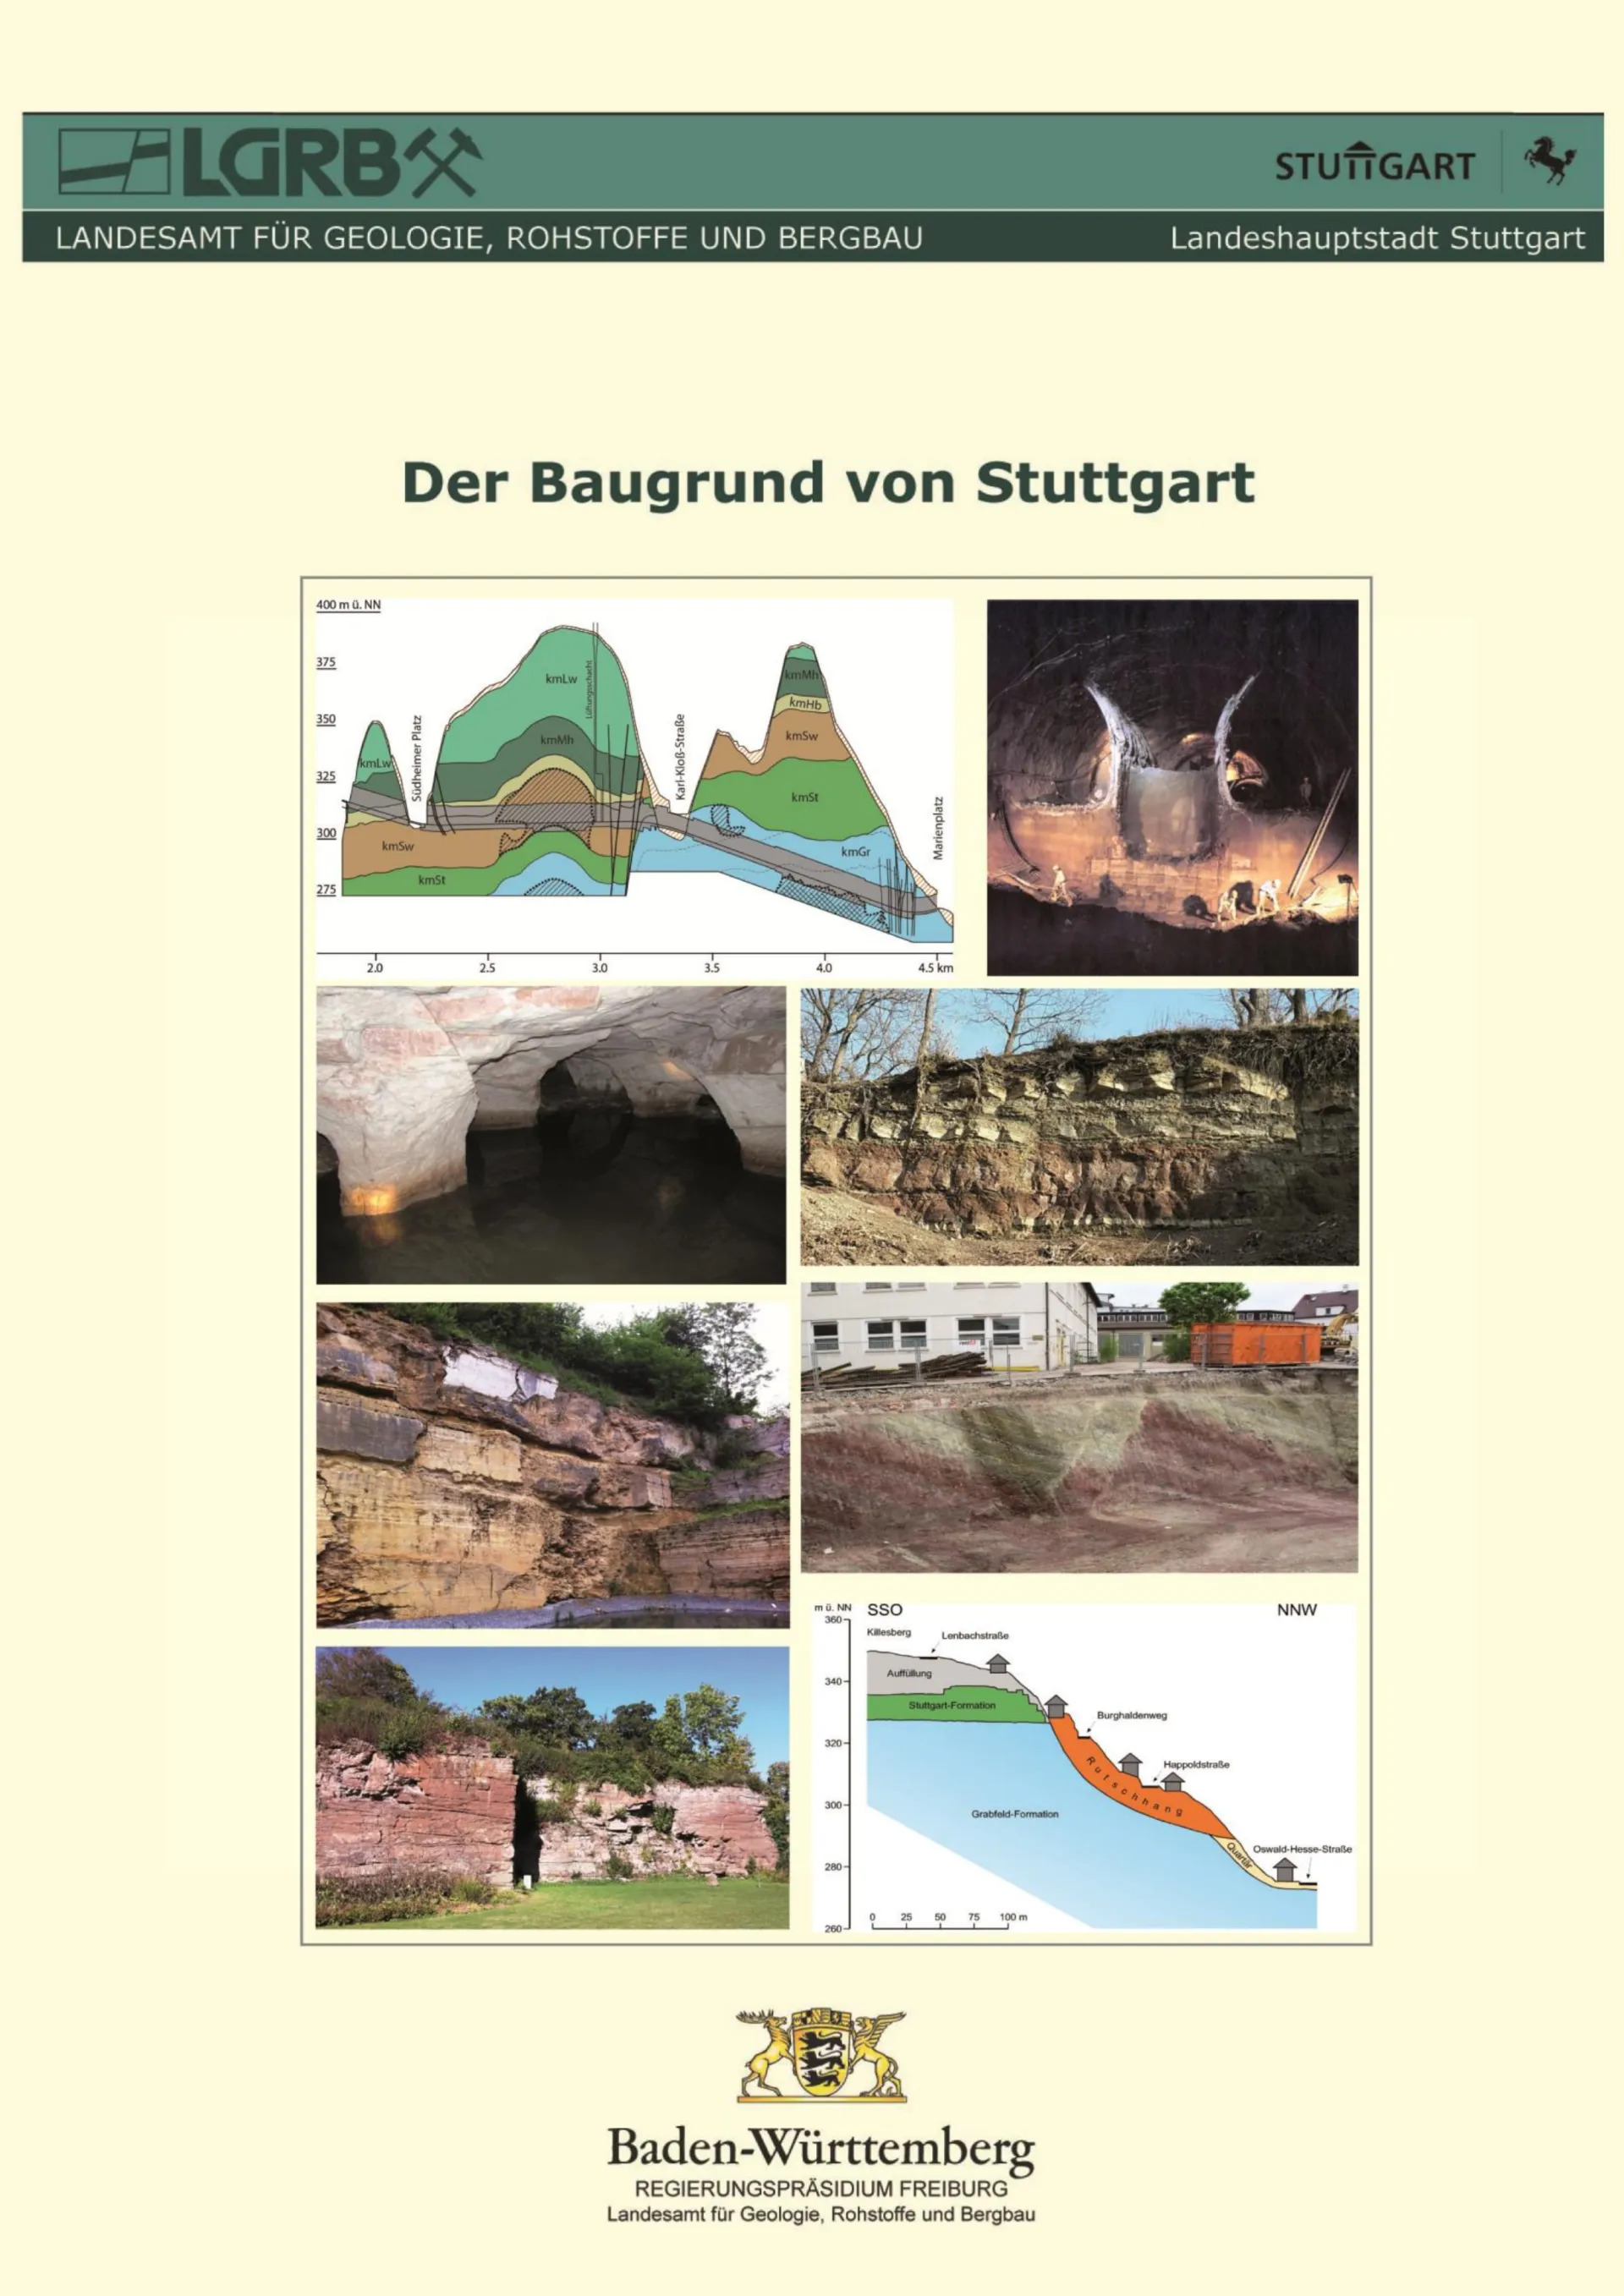 Deckblatt des Erläuterungsbands der Baugrundkarte Stuttgart. Auf blassgelbem Hintergrund sind mehrere Fotos zu Gesteinsaufschlüssen oder Grafiken von geologischen Längschnitten in einer Collage angeordnet.